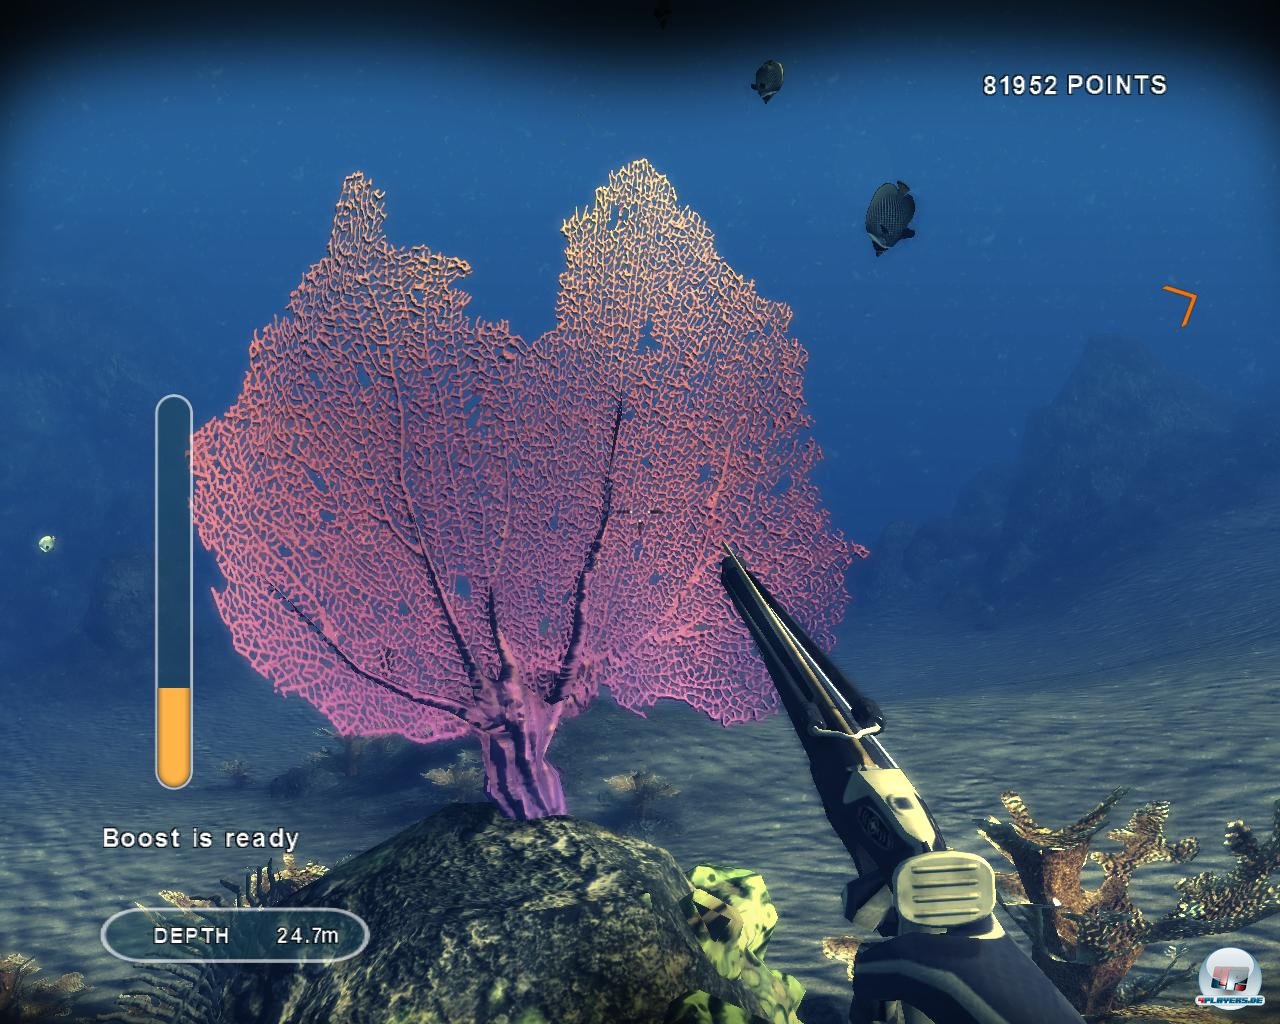 Korallen wie diese Riesen-Gorgonie sind ansprechend dargestellt.